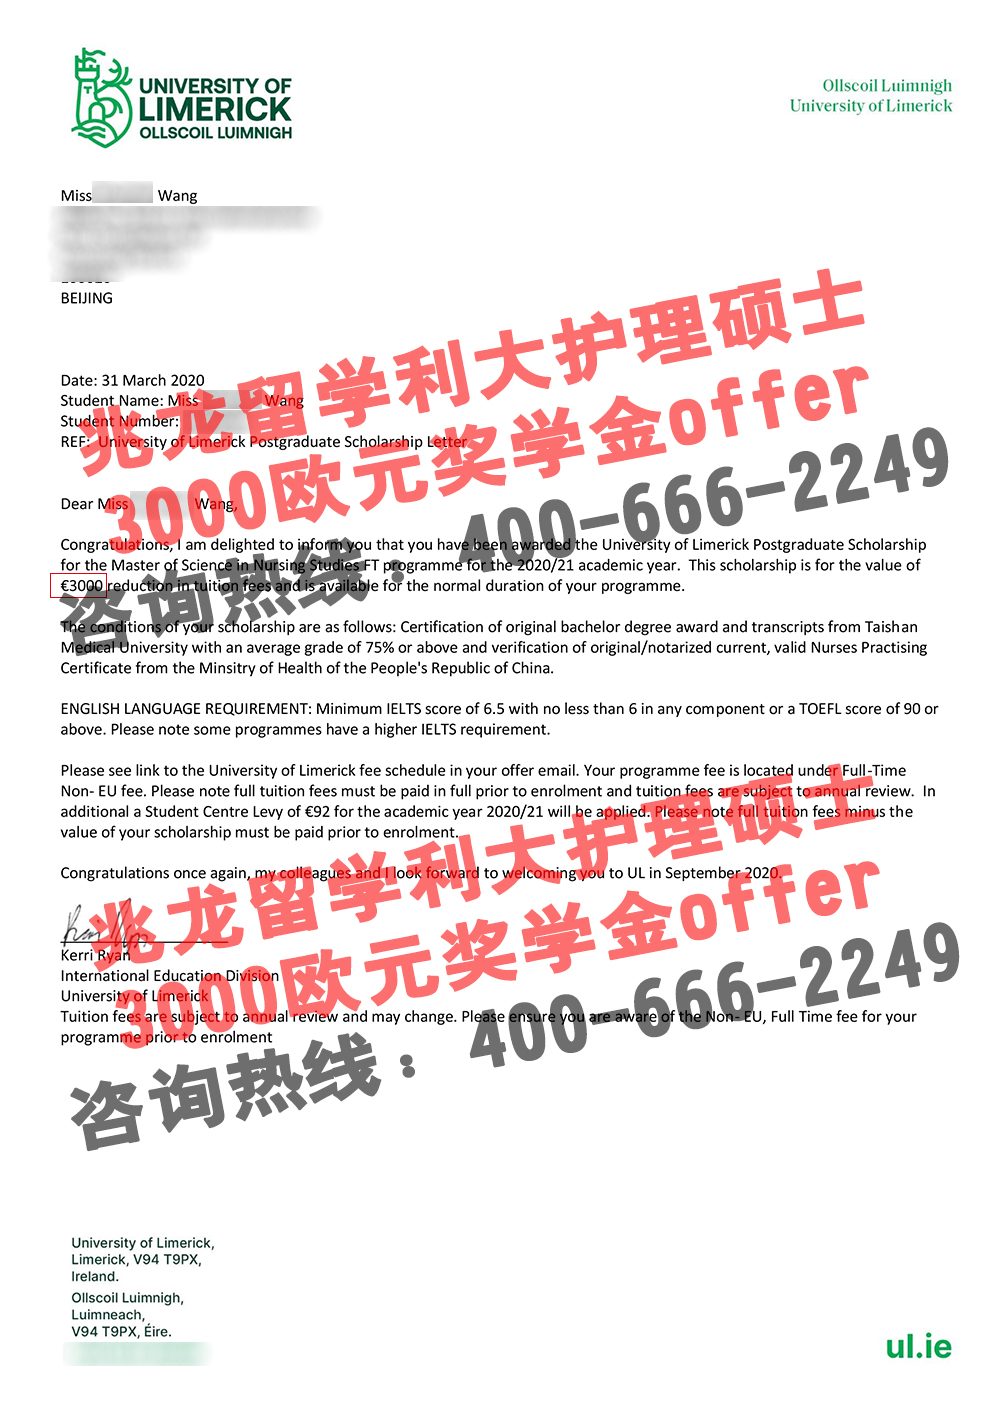 王shuzhen-利大护理-3000欧元奖学金offer-北京兆龙留学.jpg